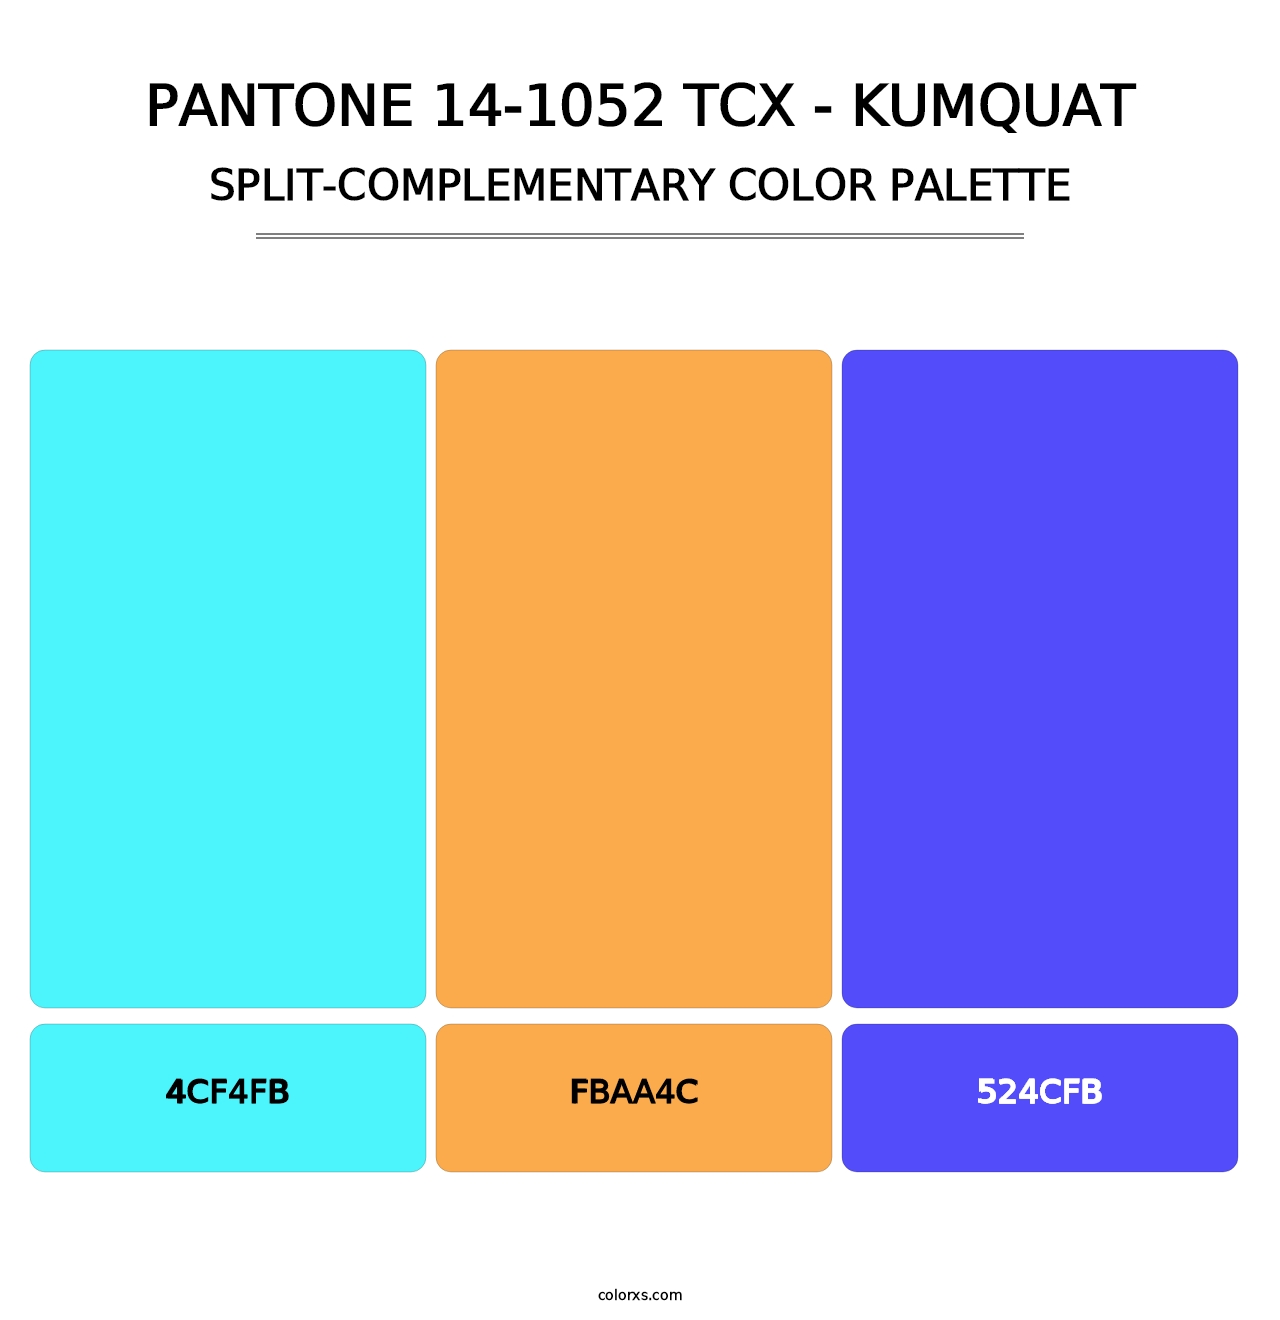 PANTONE 14-1052 TCX - Kumquat - Split-Complementary Color Palette